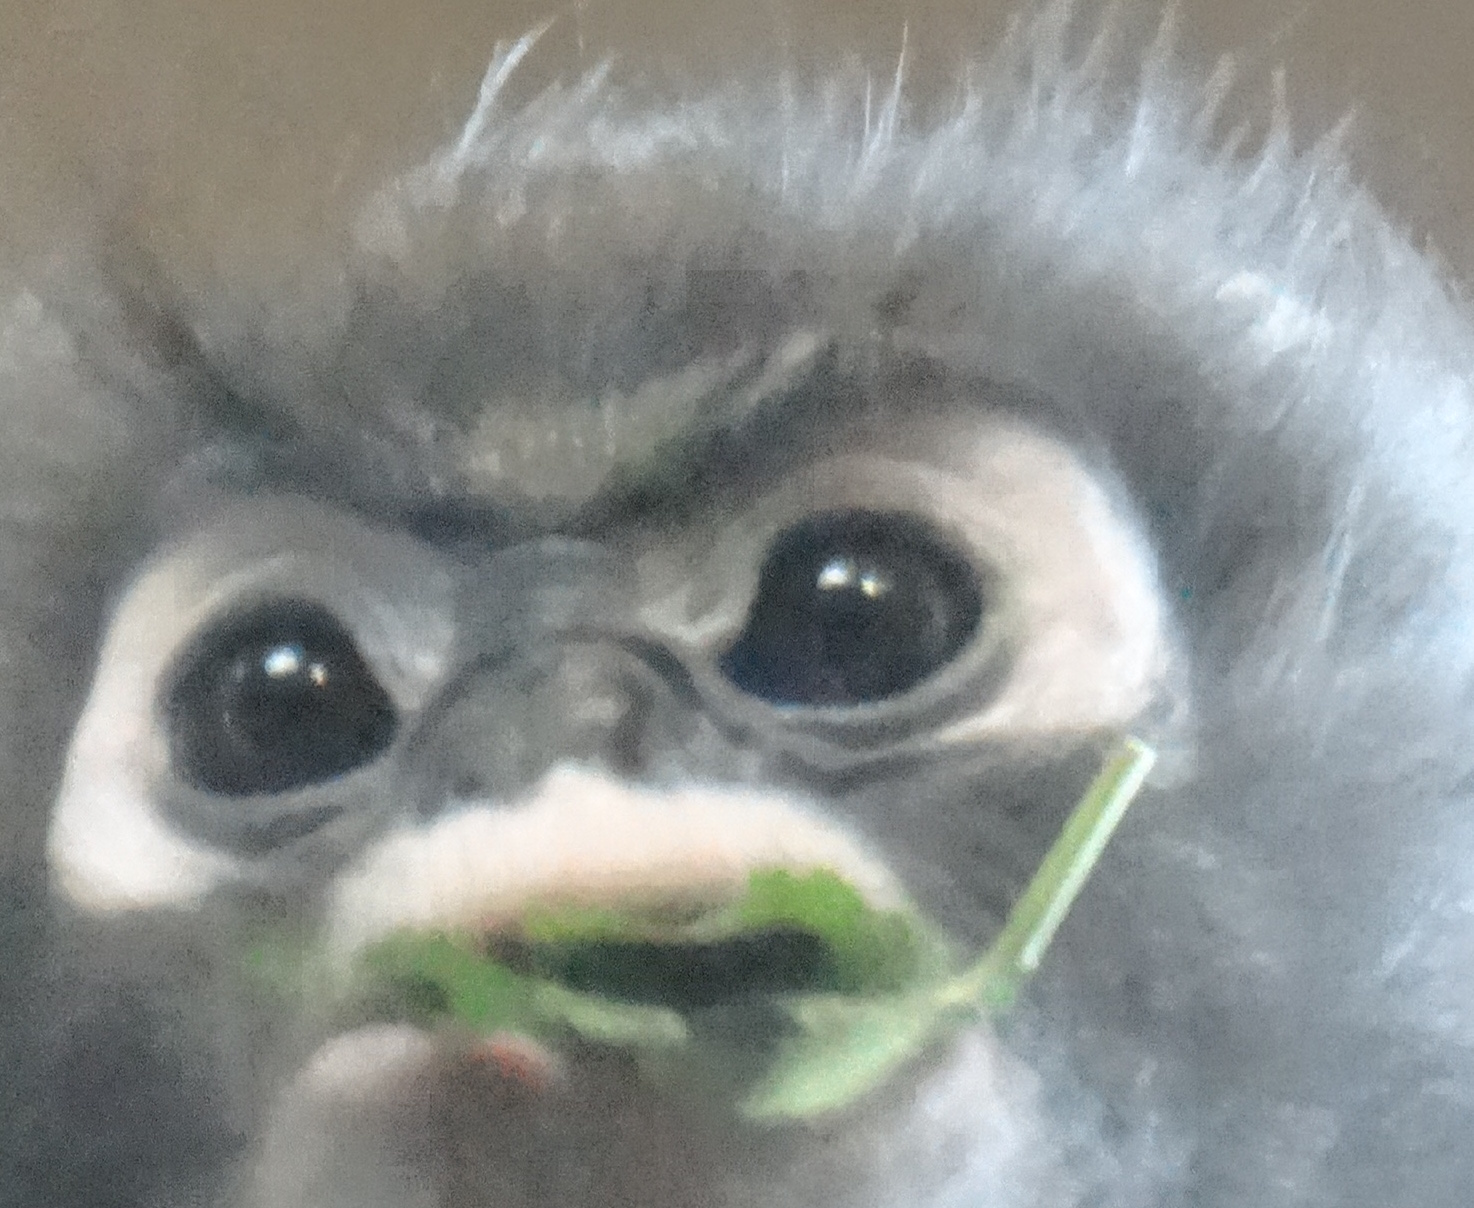 grainy monkey image